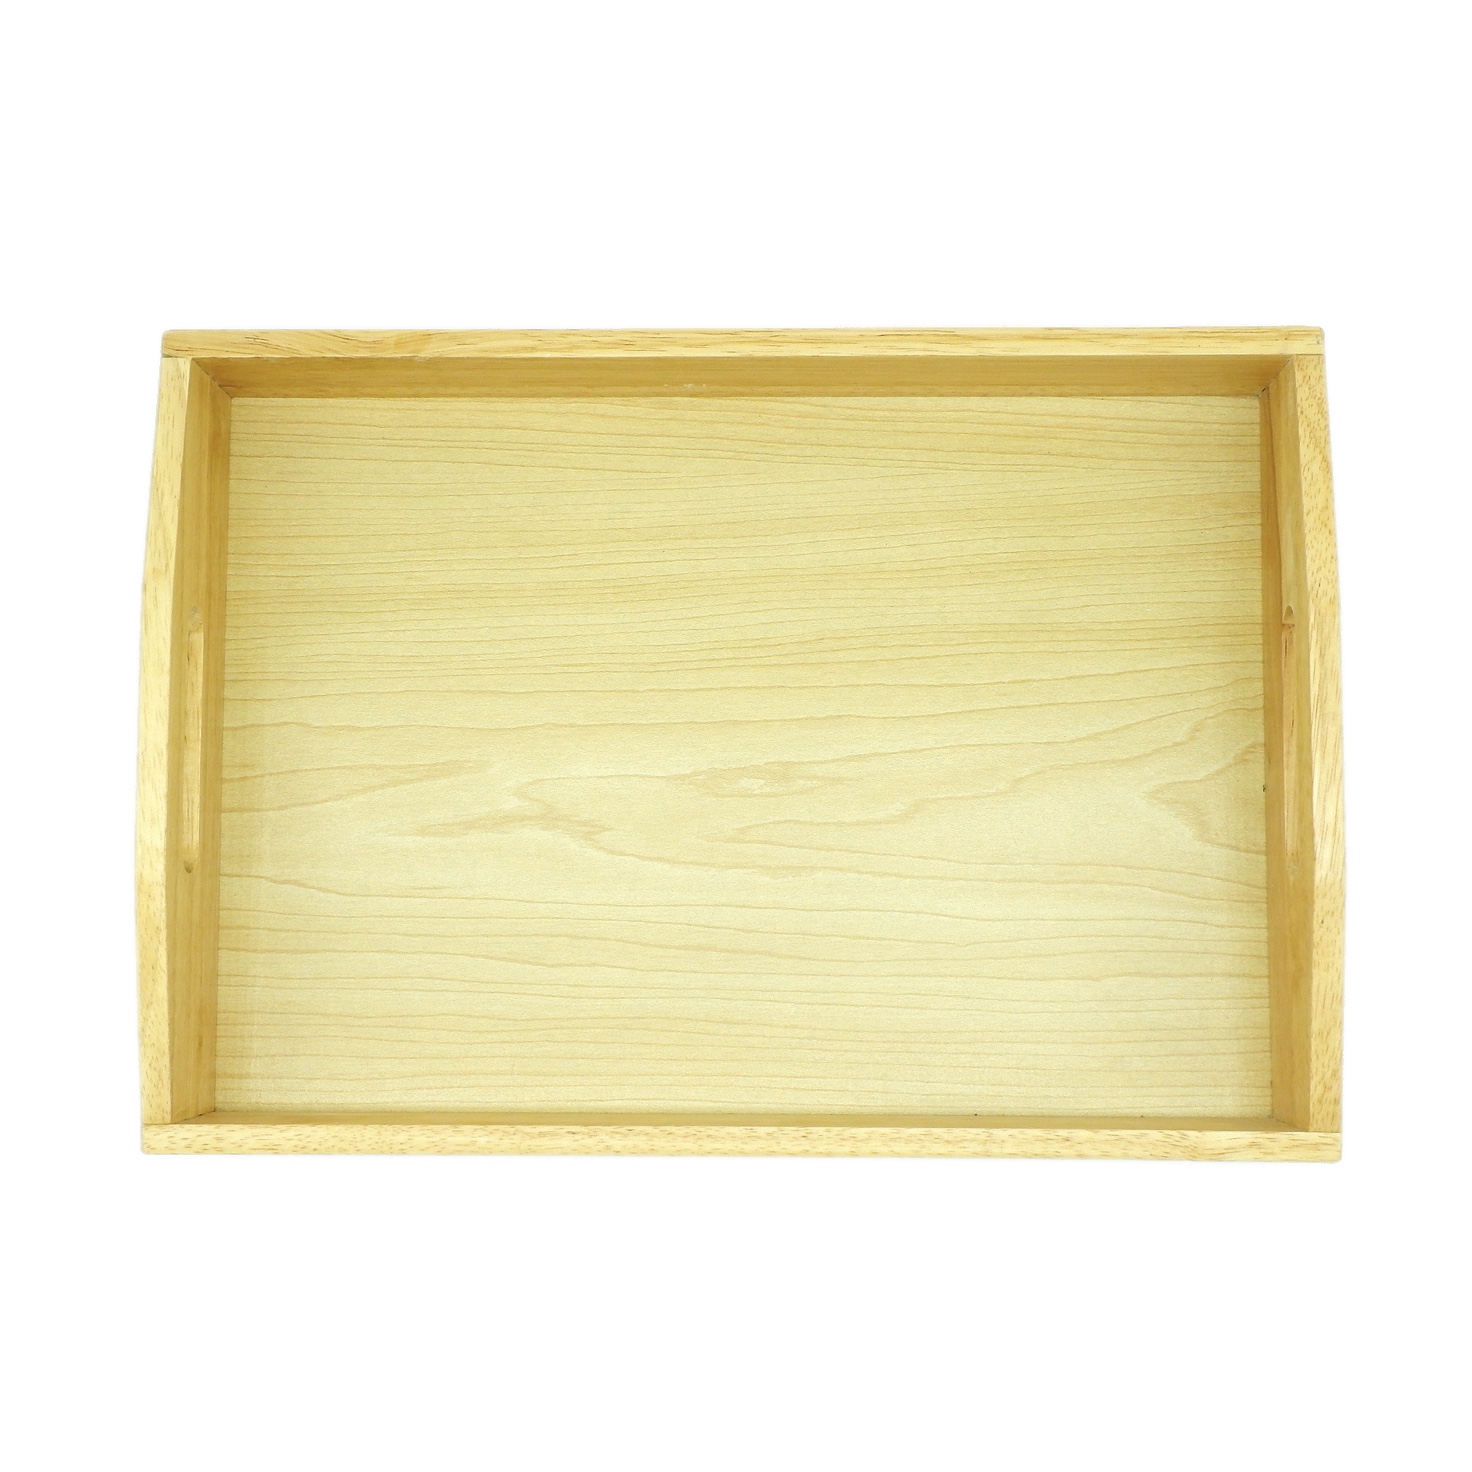 Wooden Tray: Medium